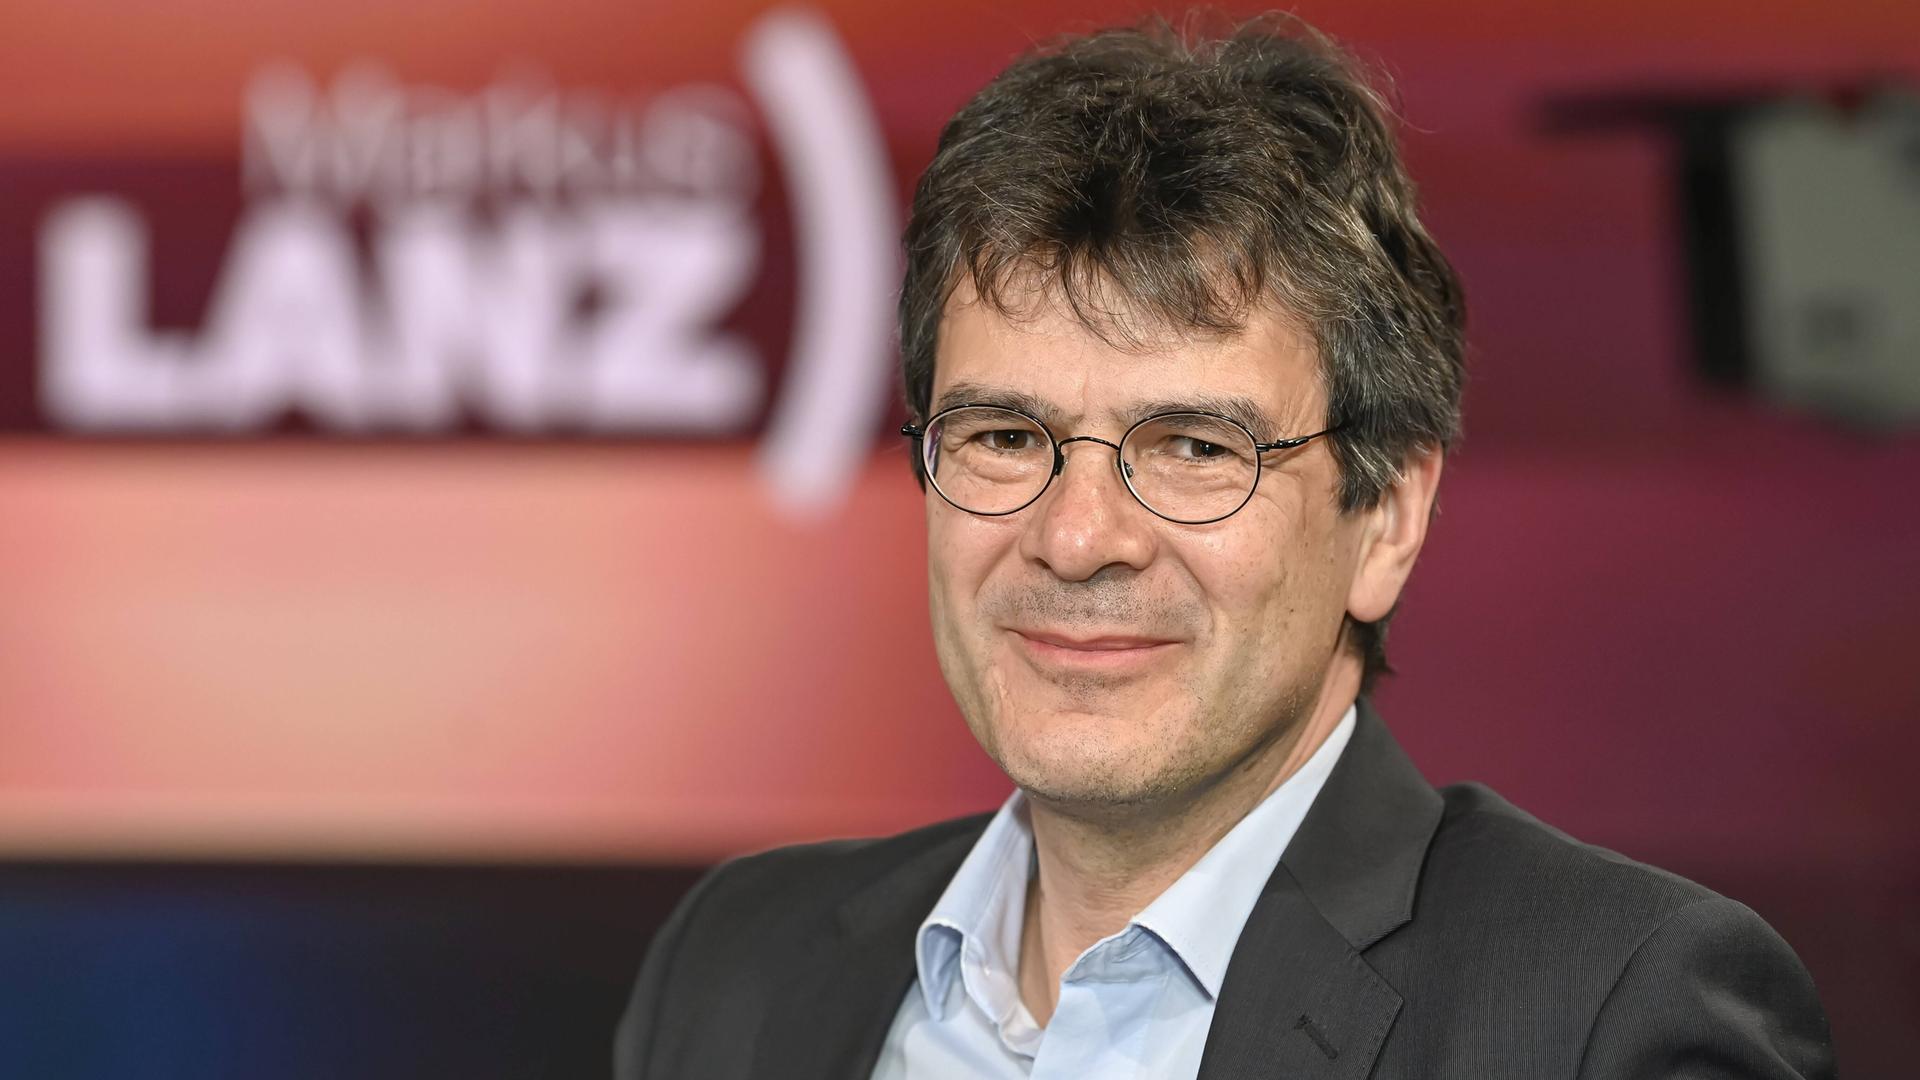 Der Virologe Prof. Gérard Krause (Virologe) vom Helmholtz-Zentrum für Infektionsforschung in der TV-Sendung "Markus Lanz"
